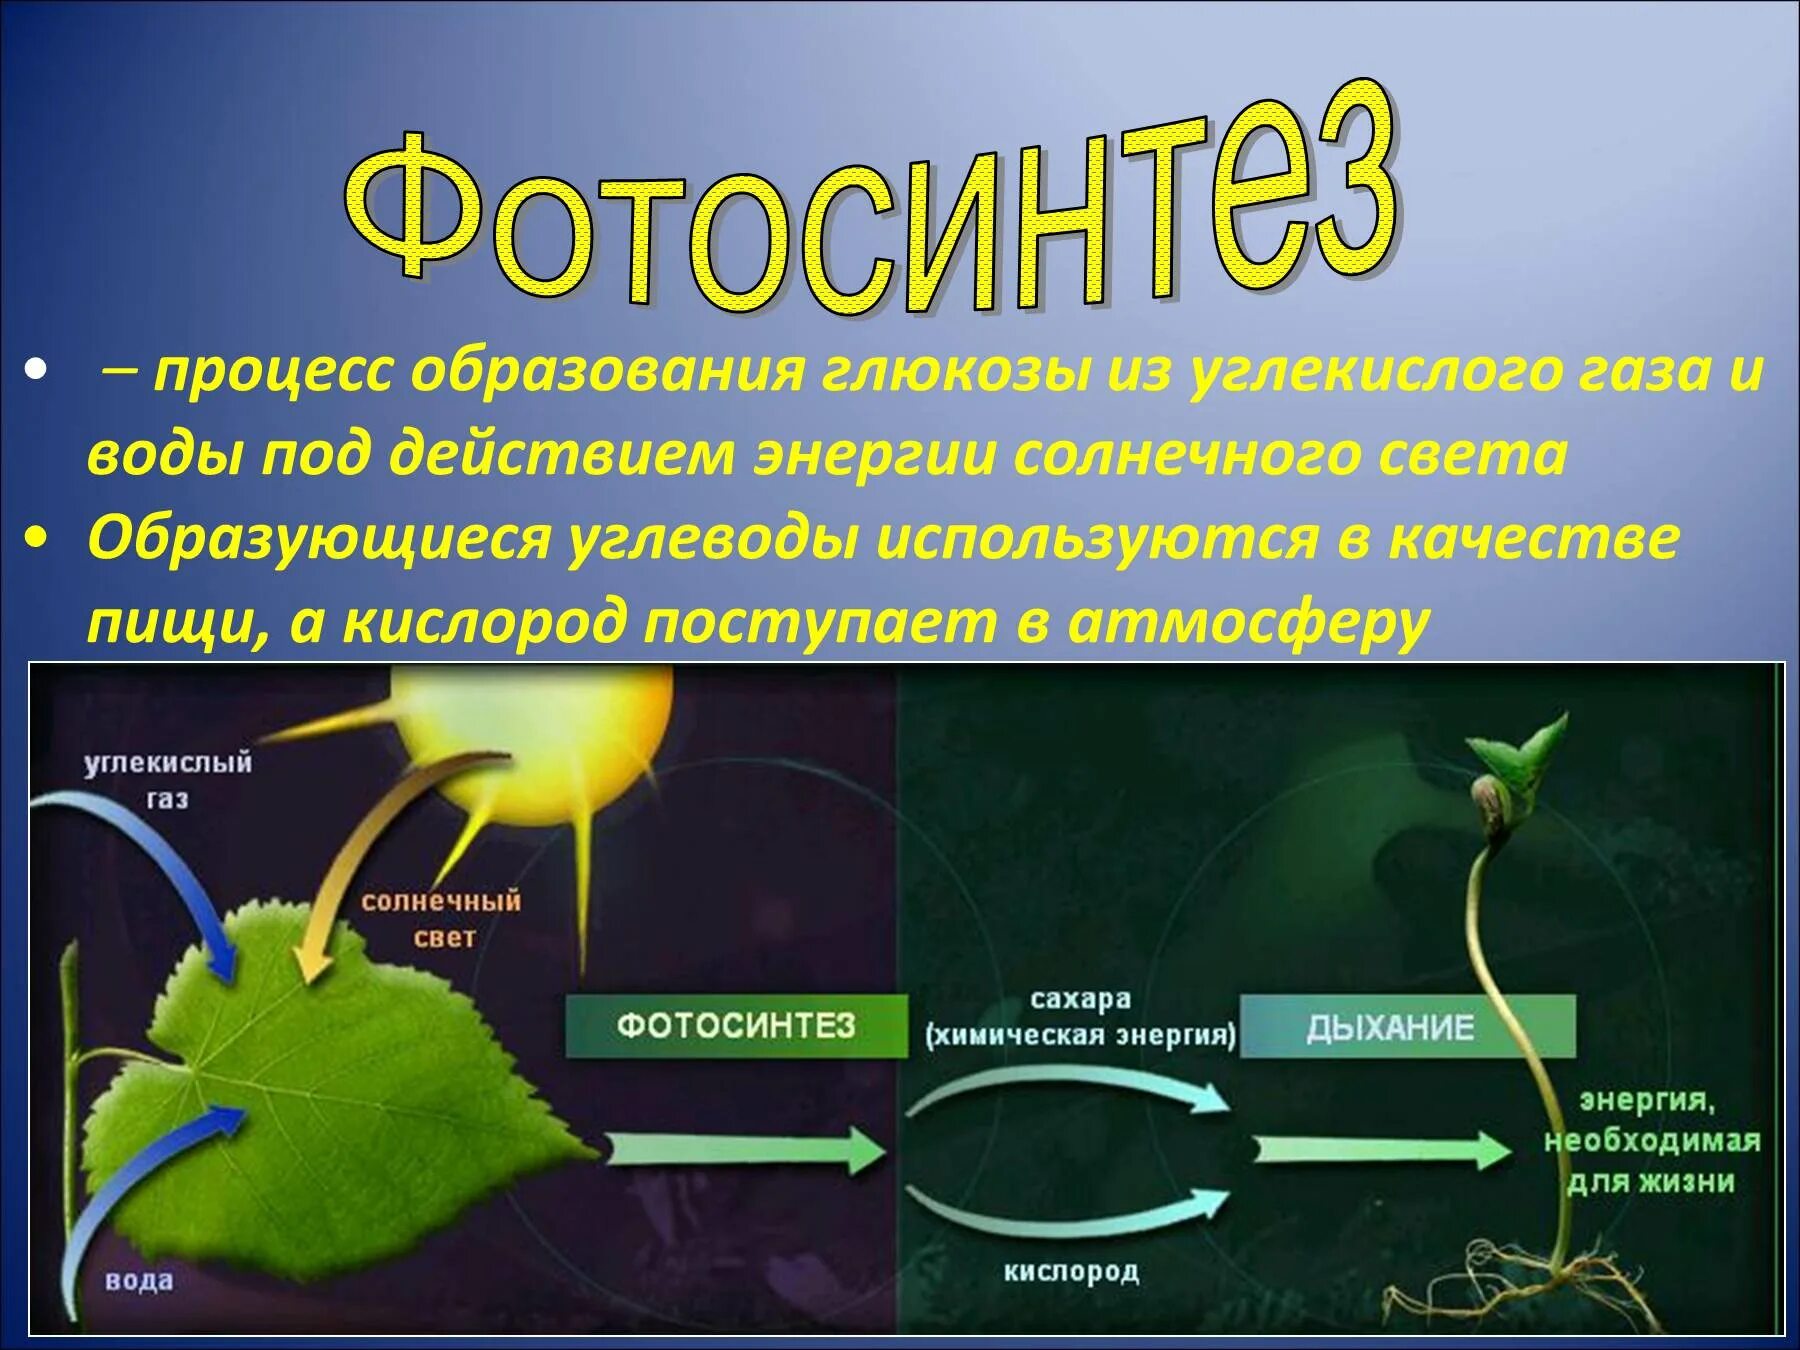 Ajnjcbyntp 6 rkfc ,bjkjubz. Образование Глюкозы в процессе фотосинтеза. 3 Стадии фотосинтеза. Фотосинтез 9 класс биология. Солнечный свет является источником